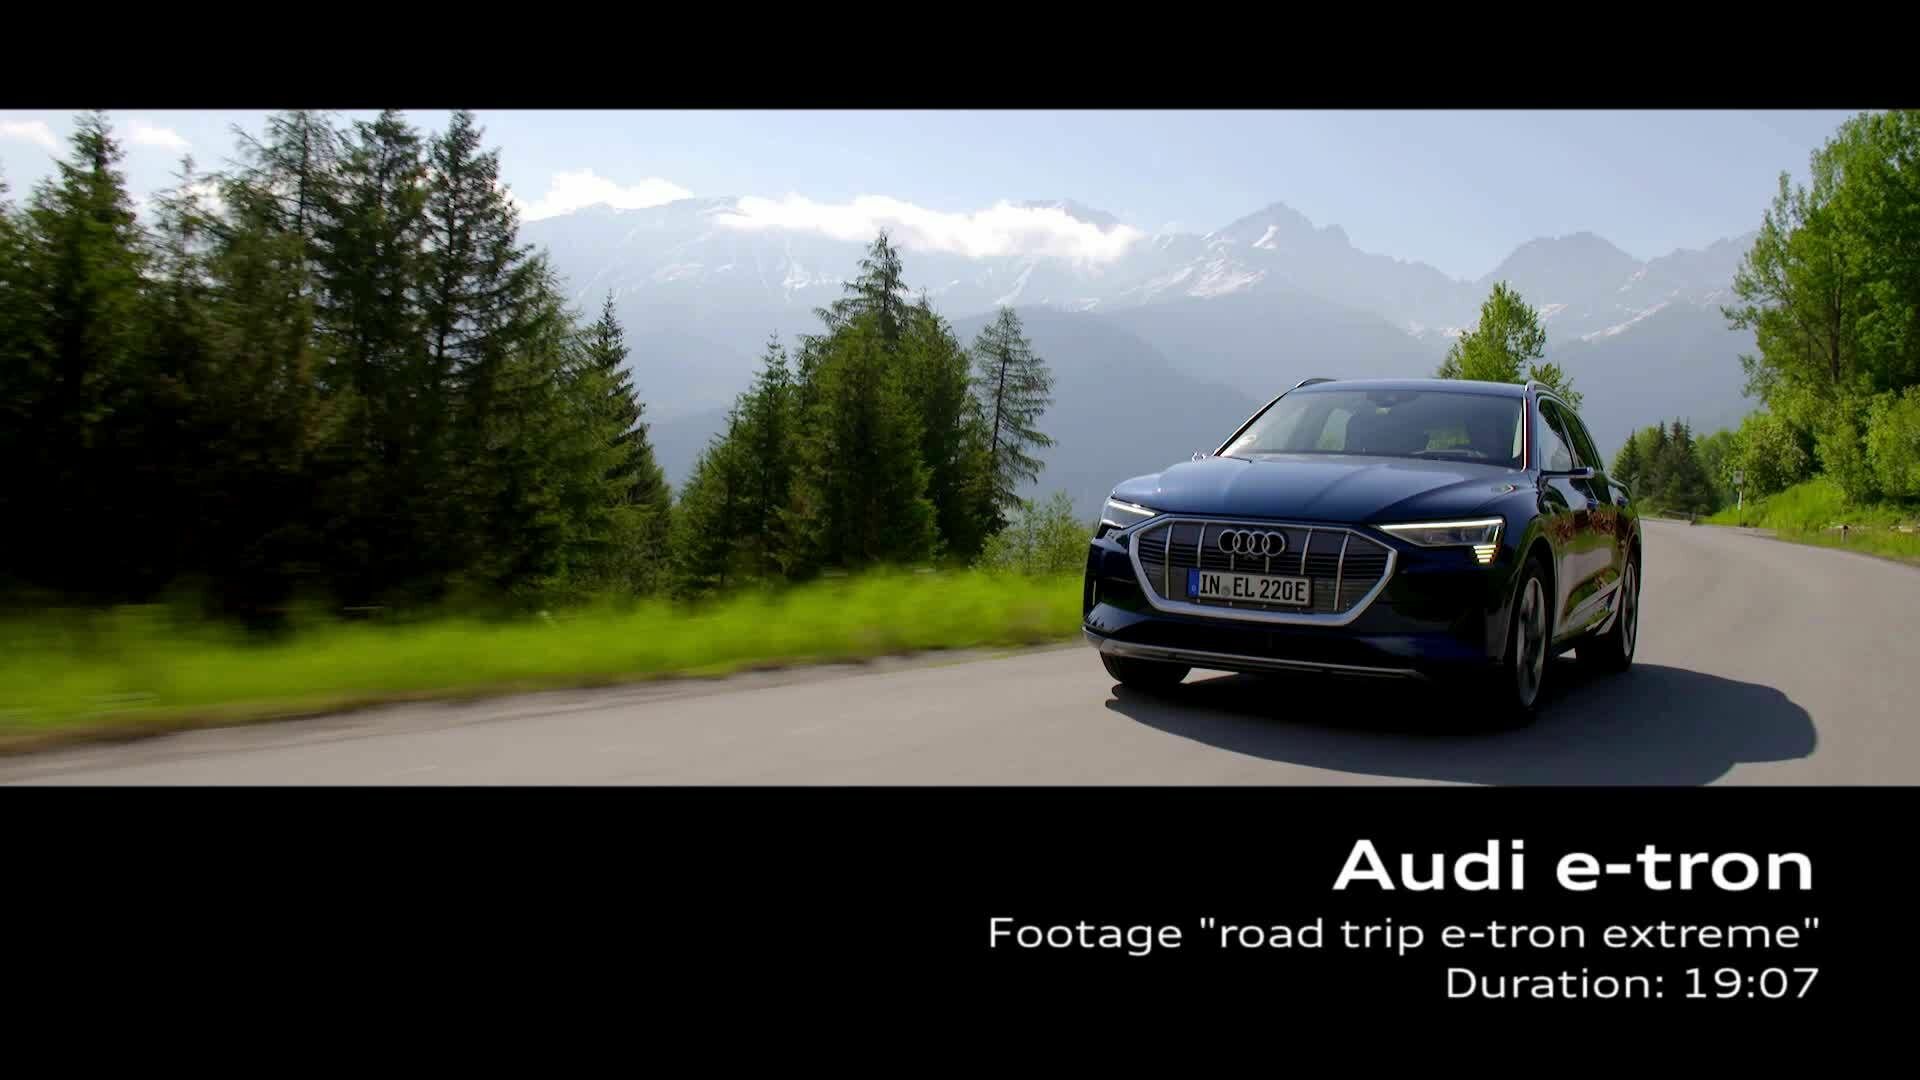 Audi e-tron on tour (Footage)